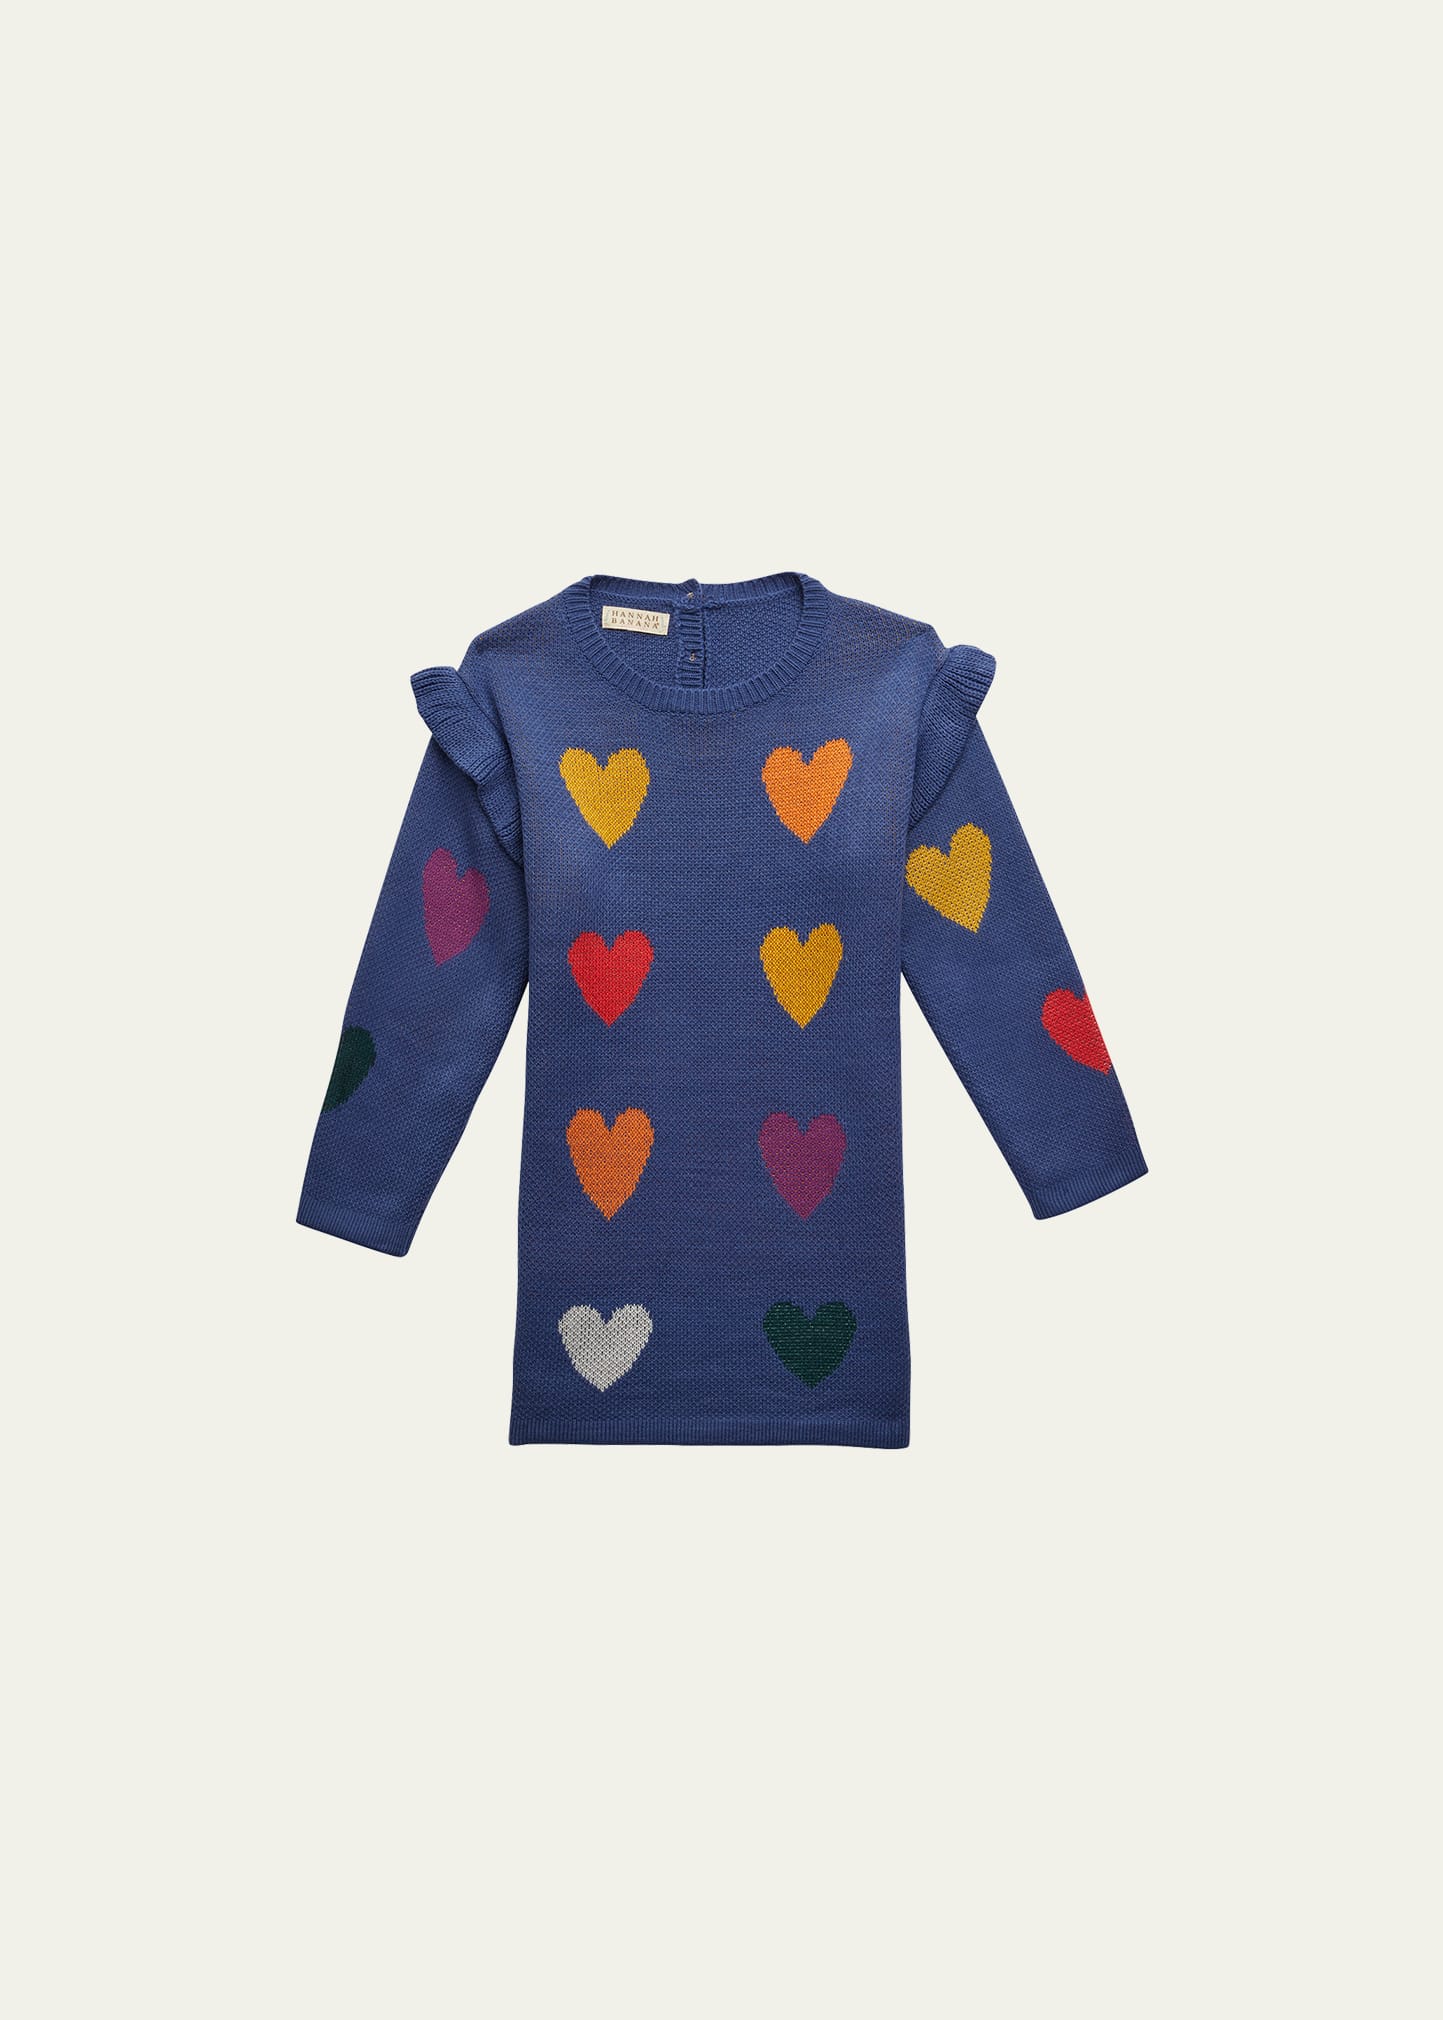 Hannah Banana Girl's Heart Sweater Ruffle Dress, Size 7-14